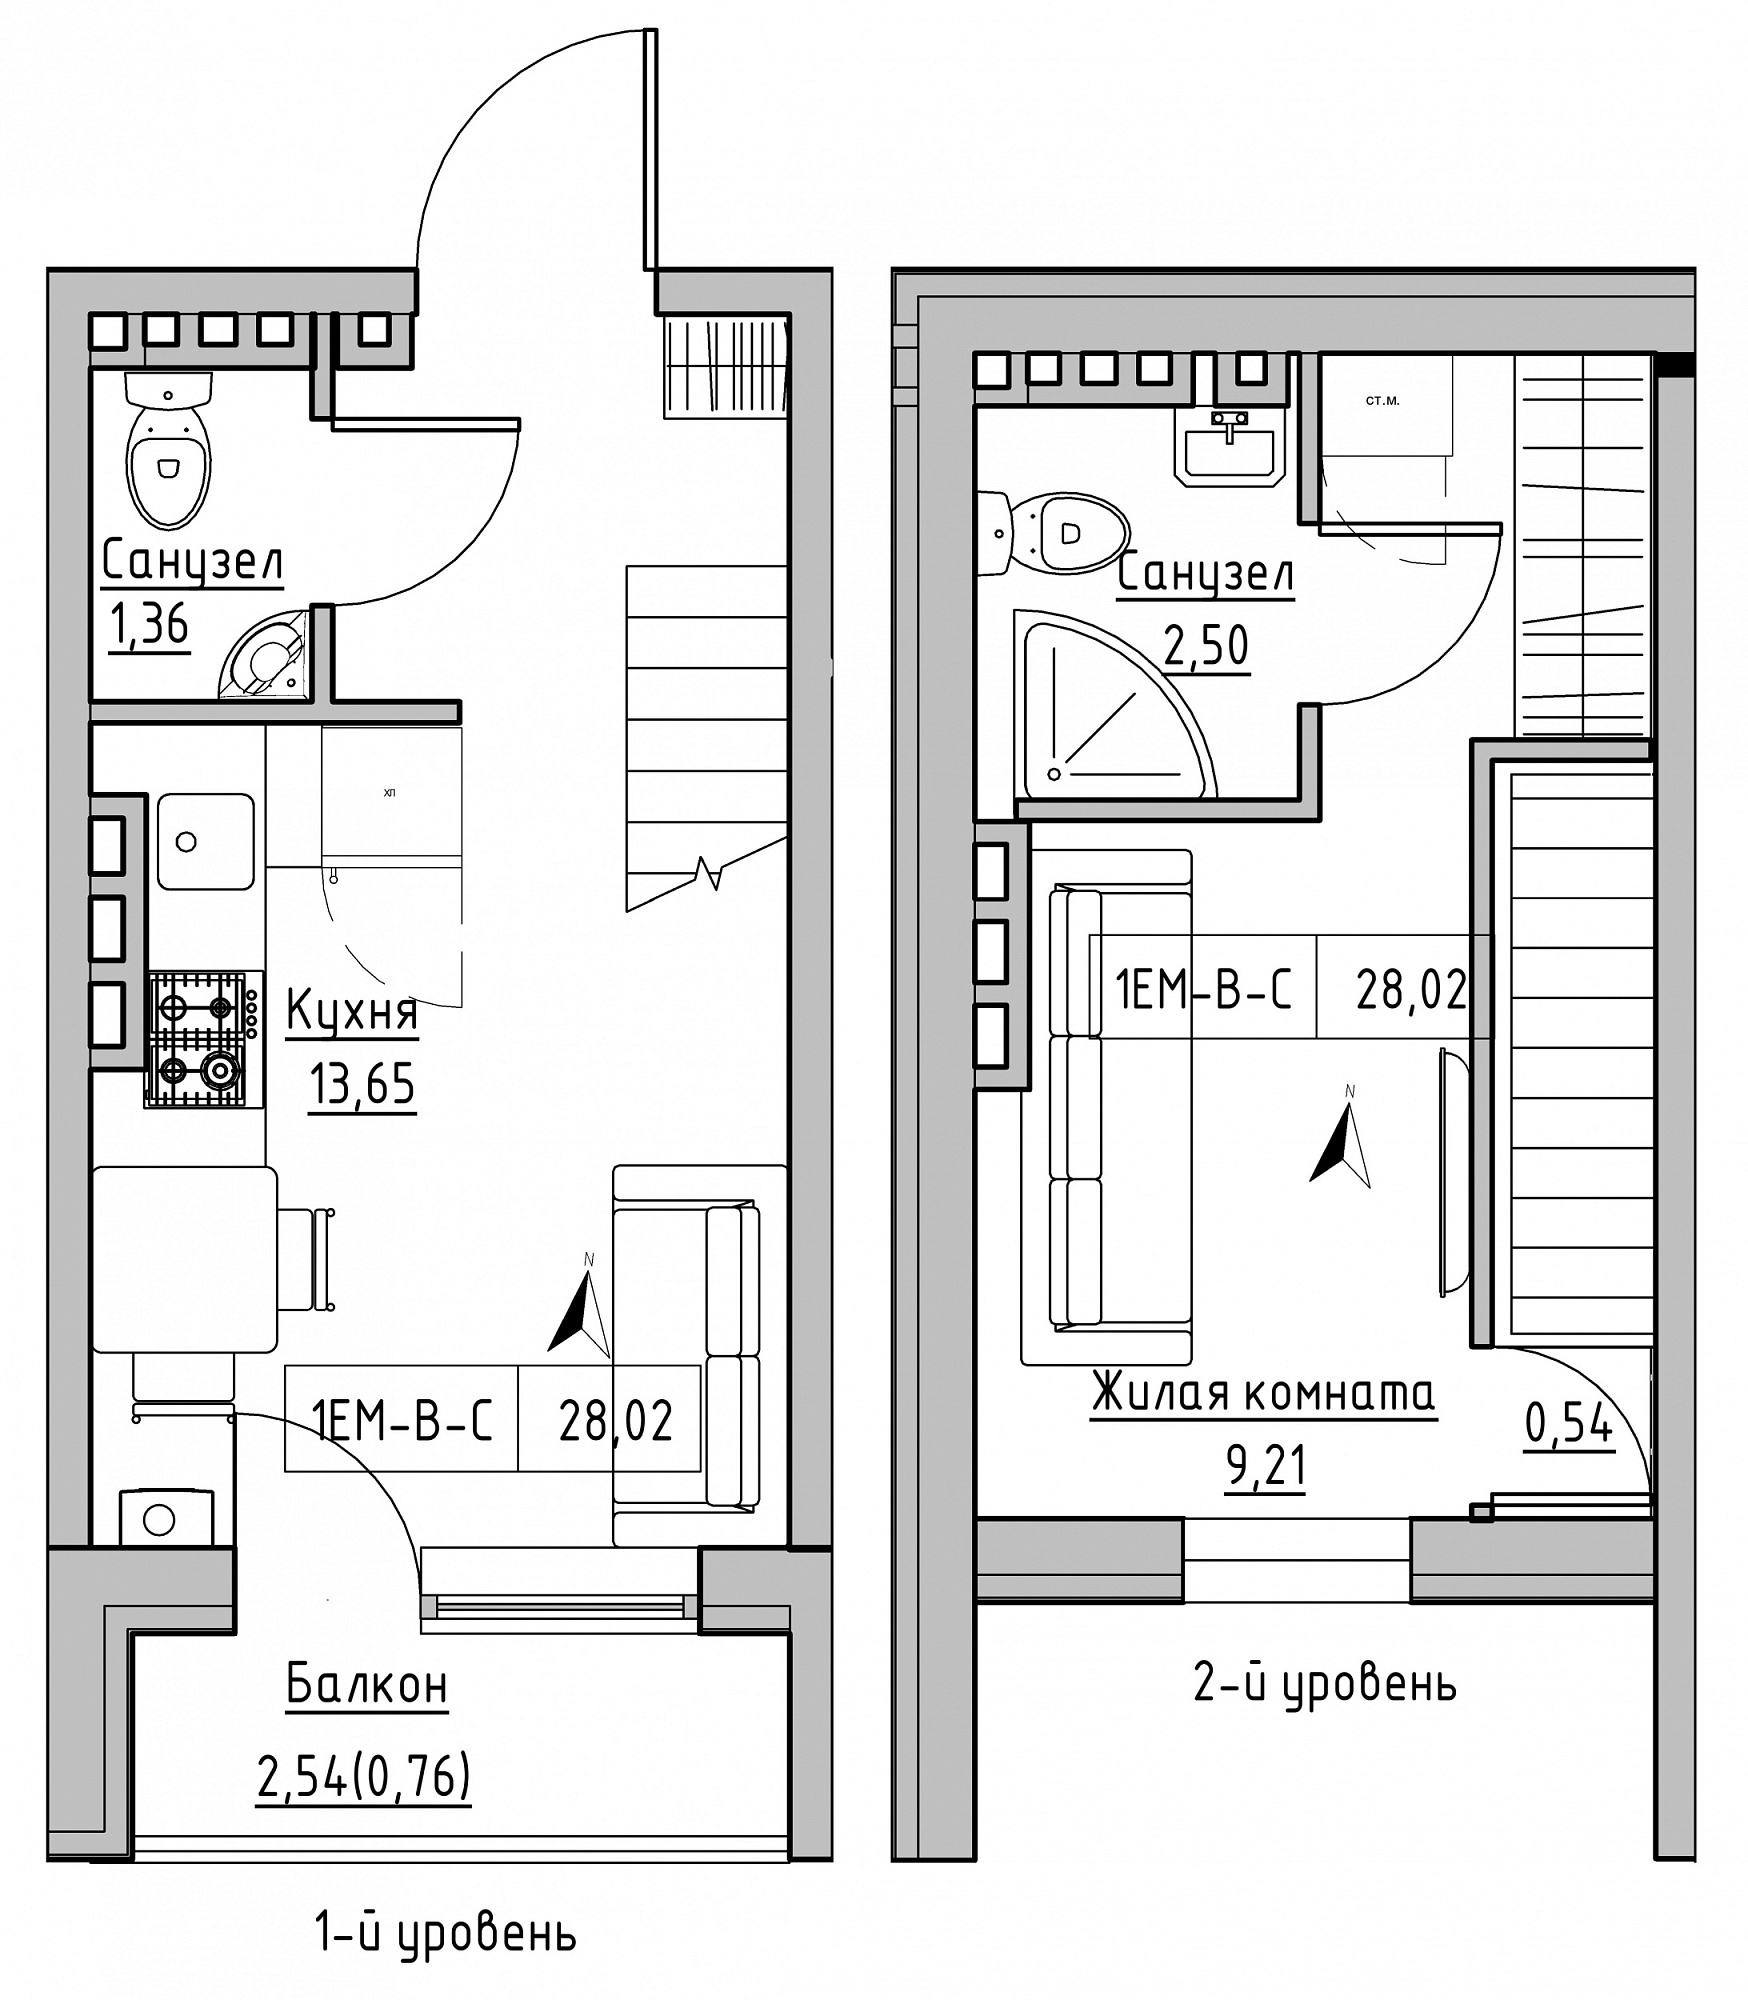 Планировка 2-x уровневая площей 28.02м2, KS-024-05/0006.